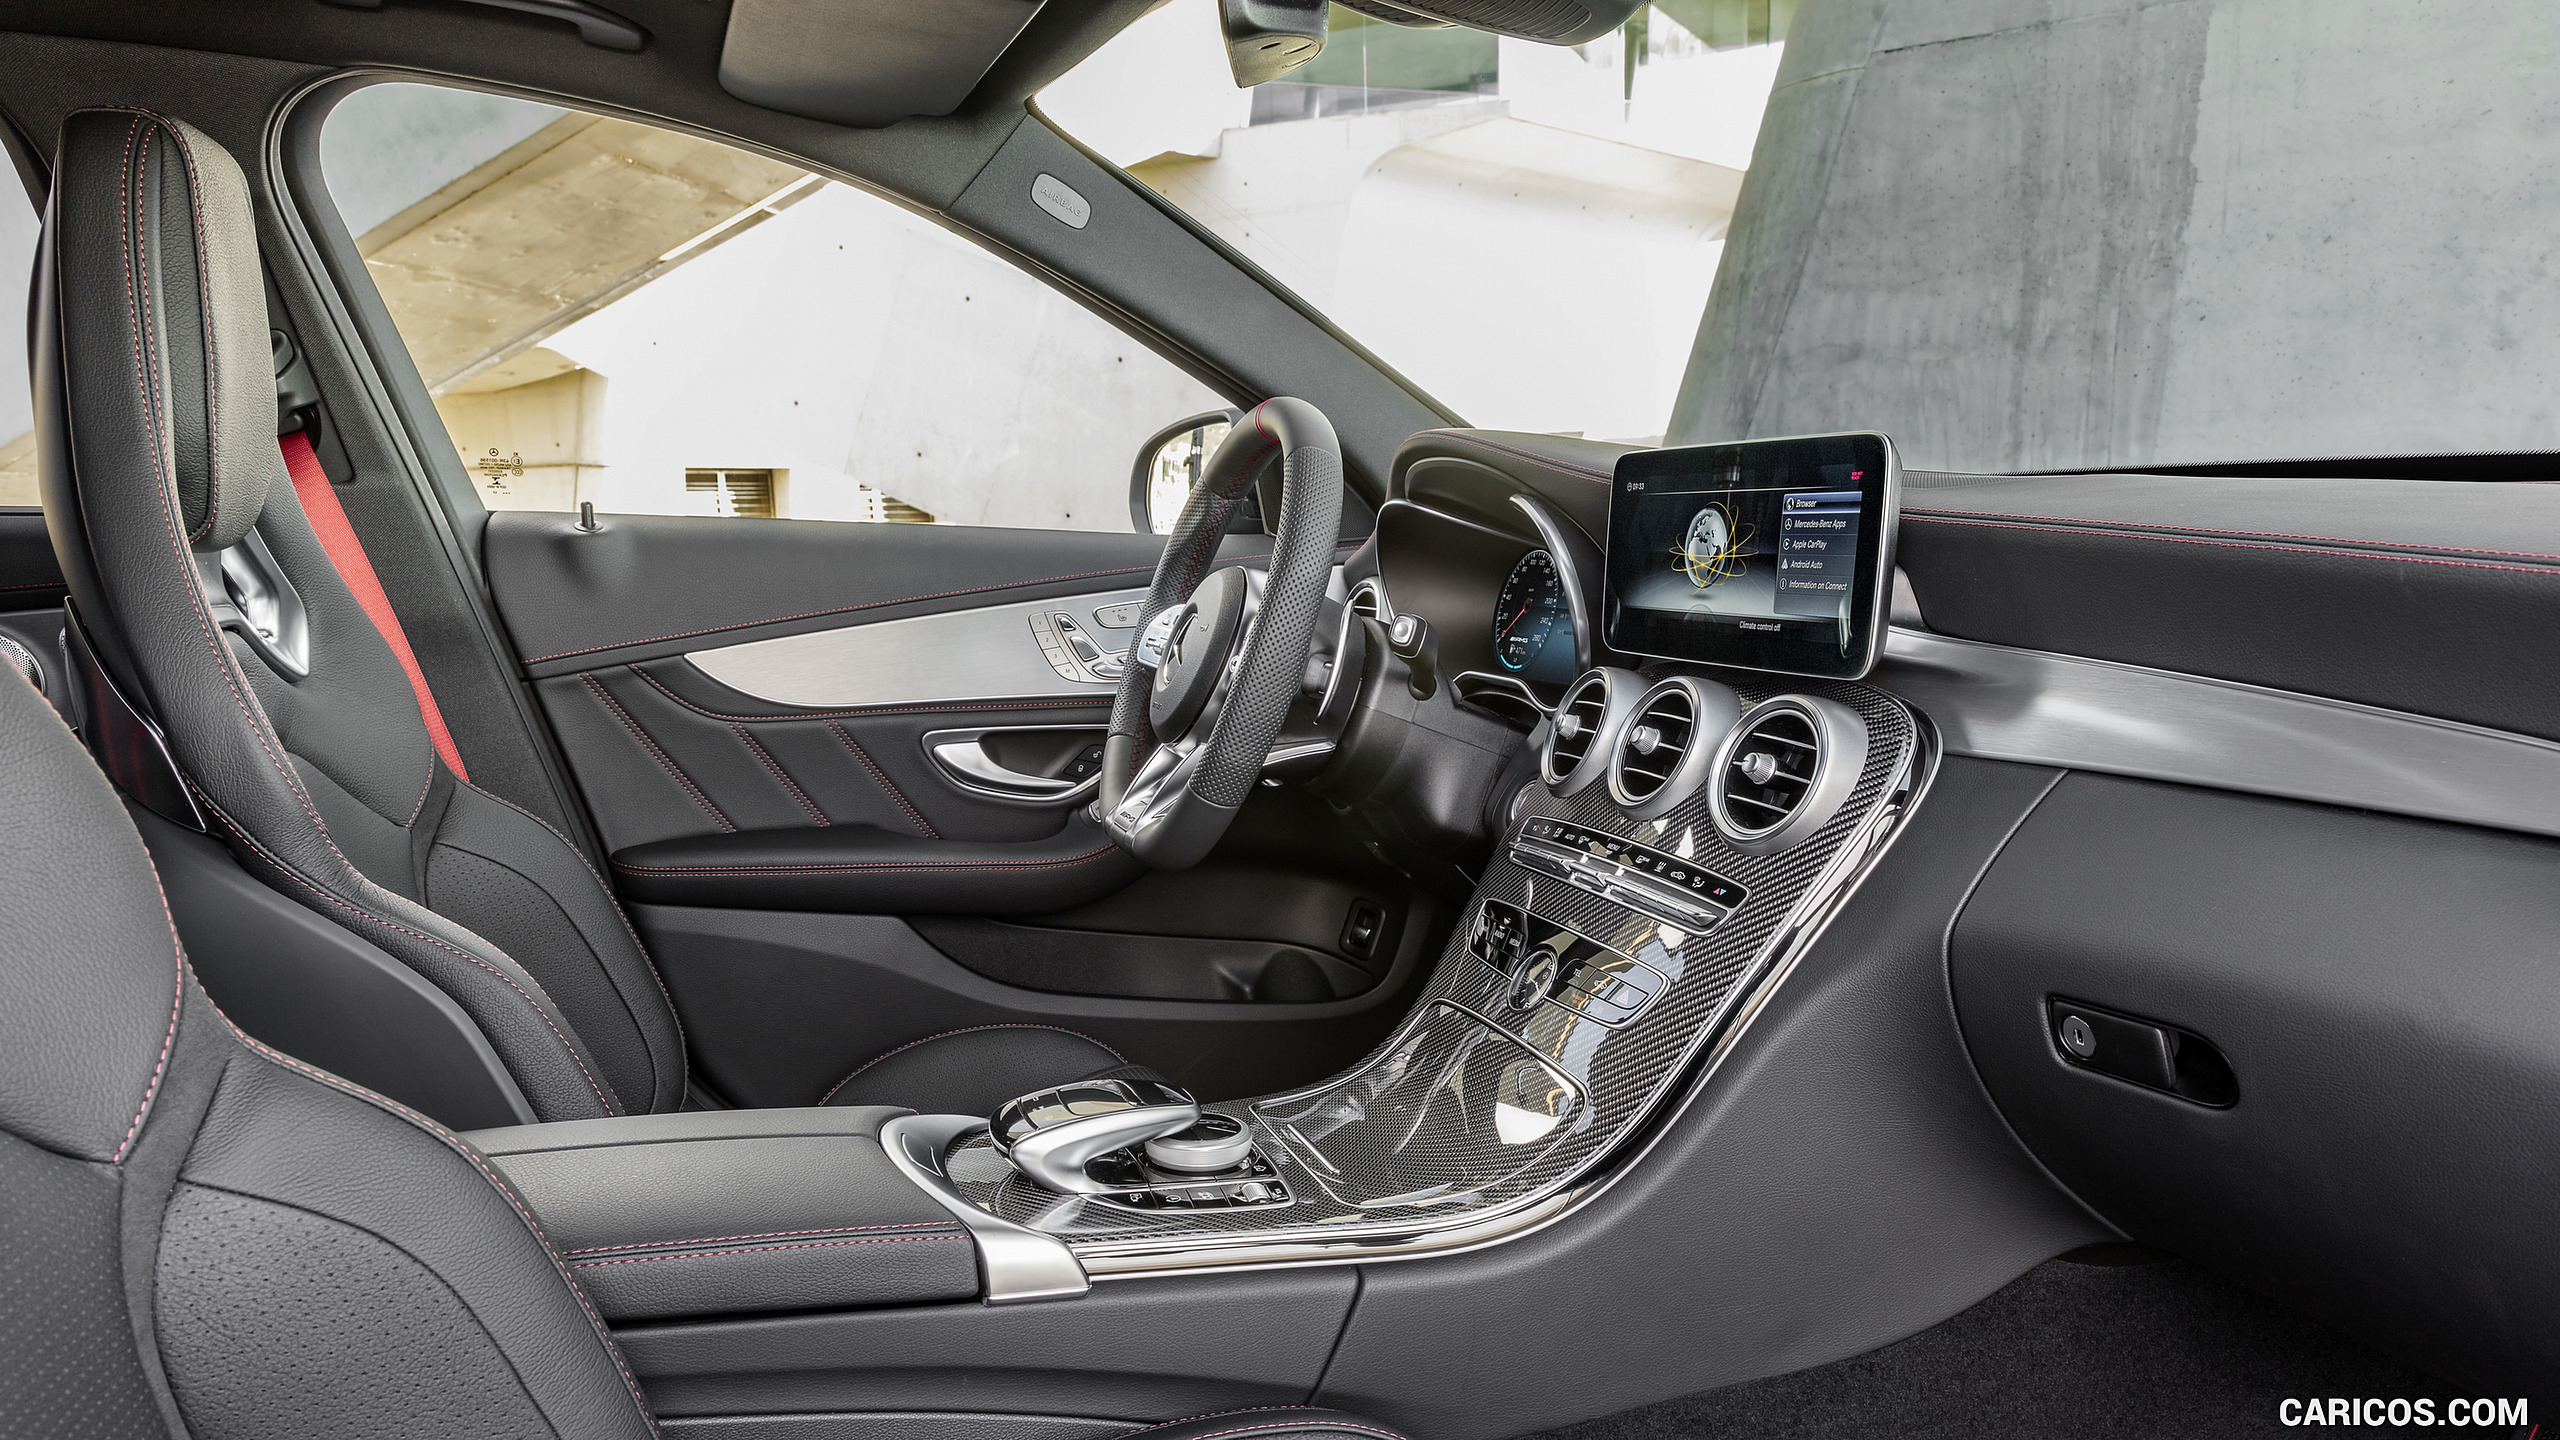 2019 Mercedes-AMG C43 4MATIC - Interior, #28 of 192